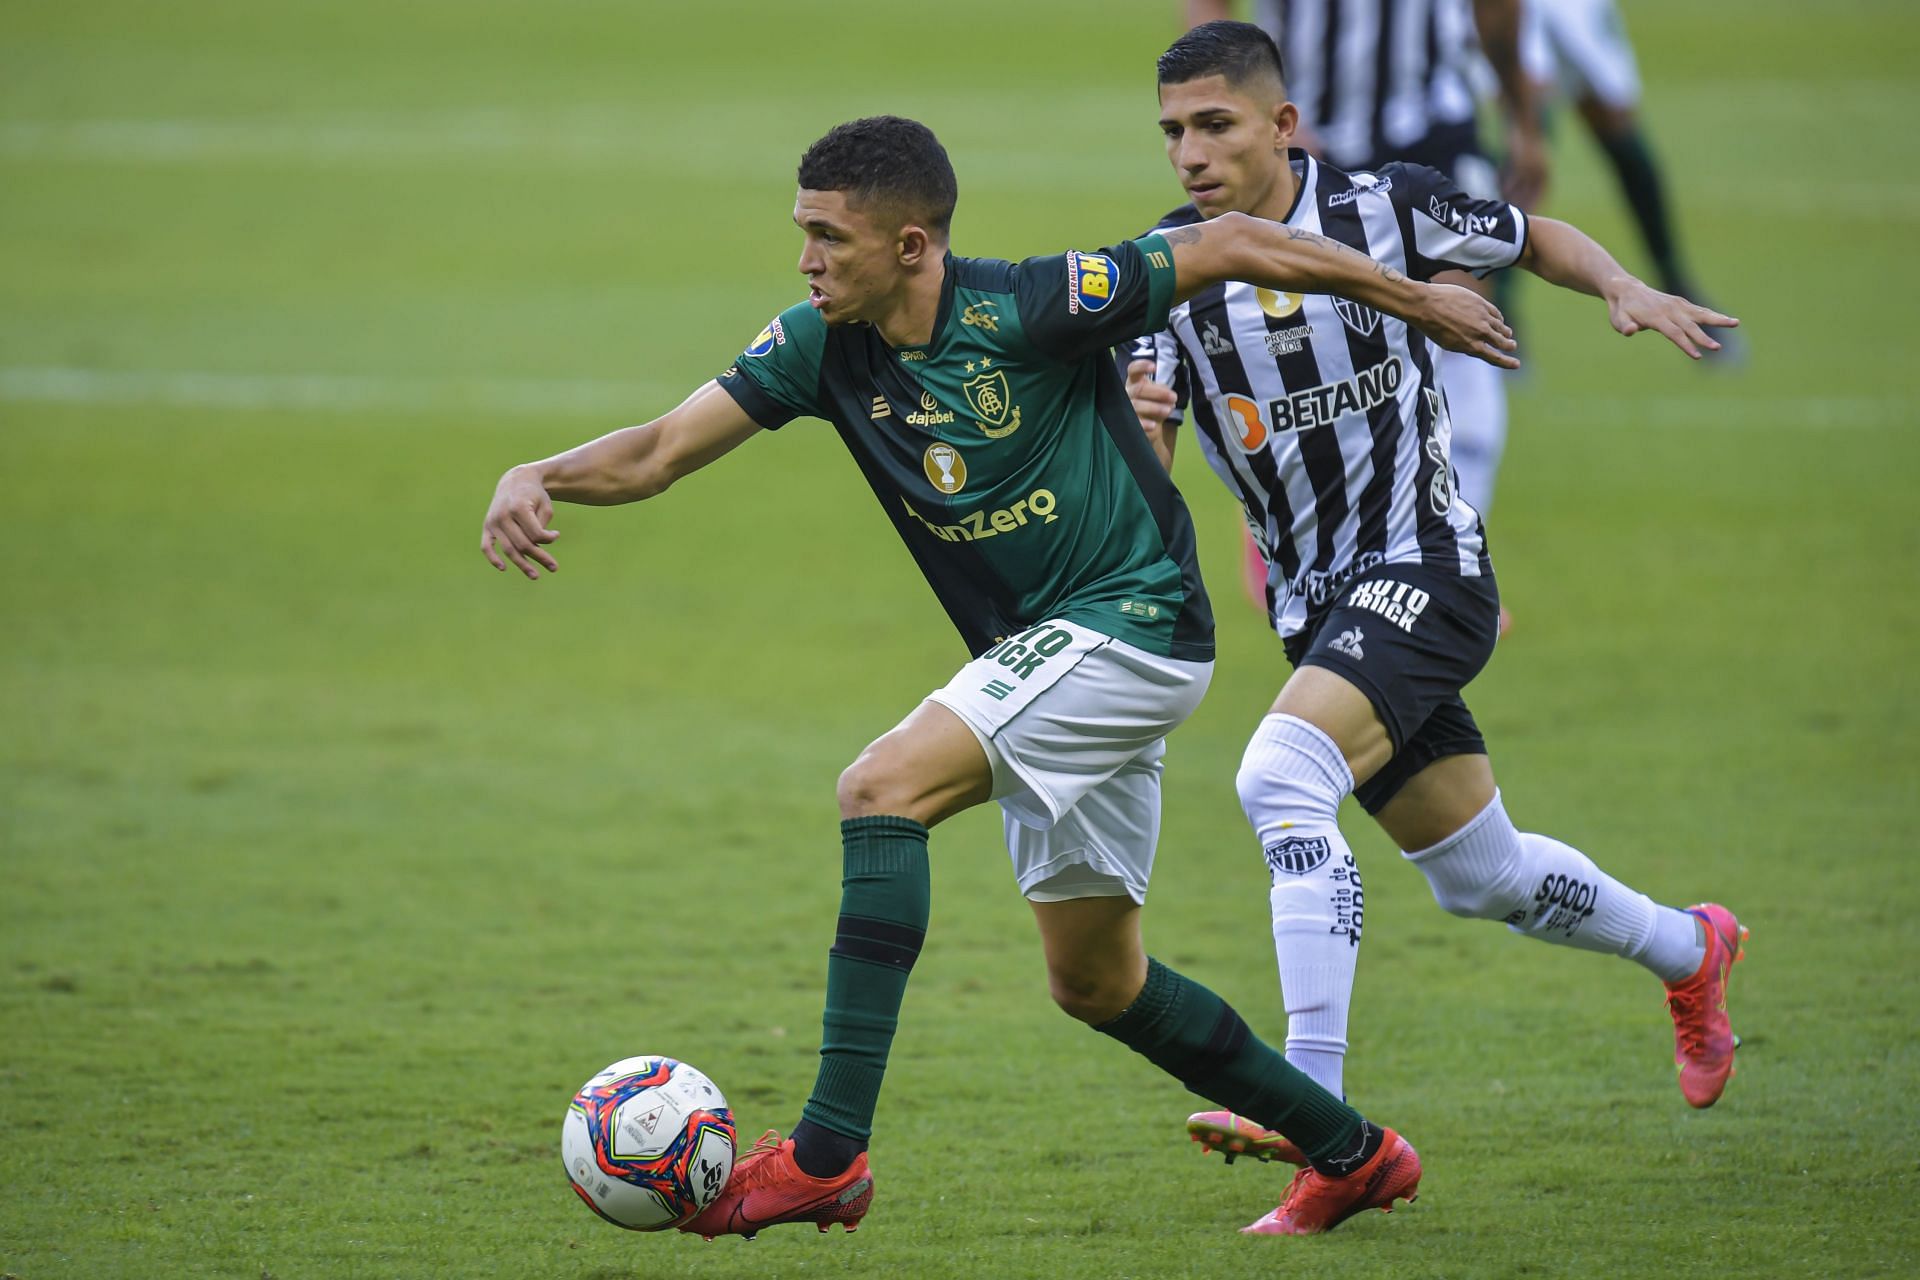 America Mineiro face Barcelona SC in their Copa Libertadores fixture on Tuesday